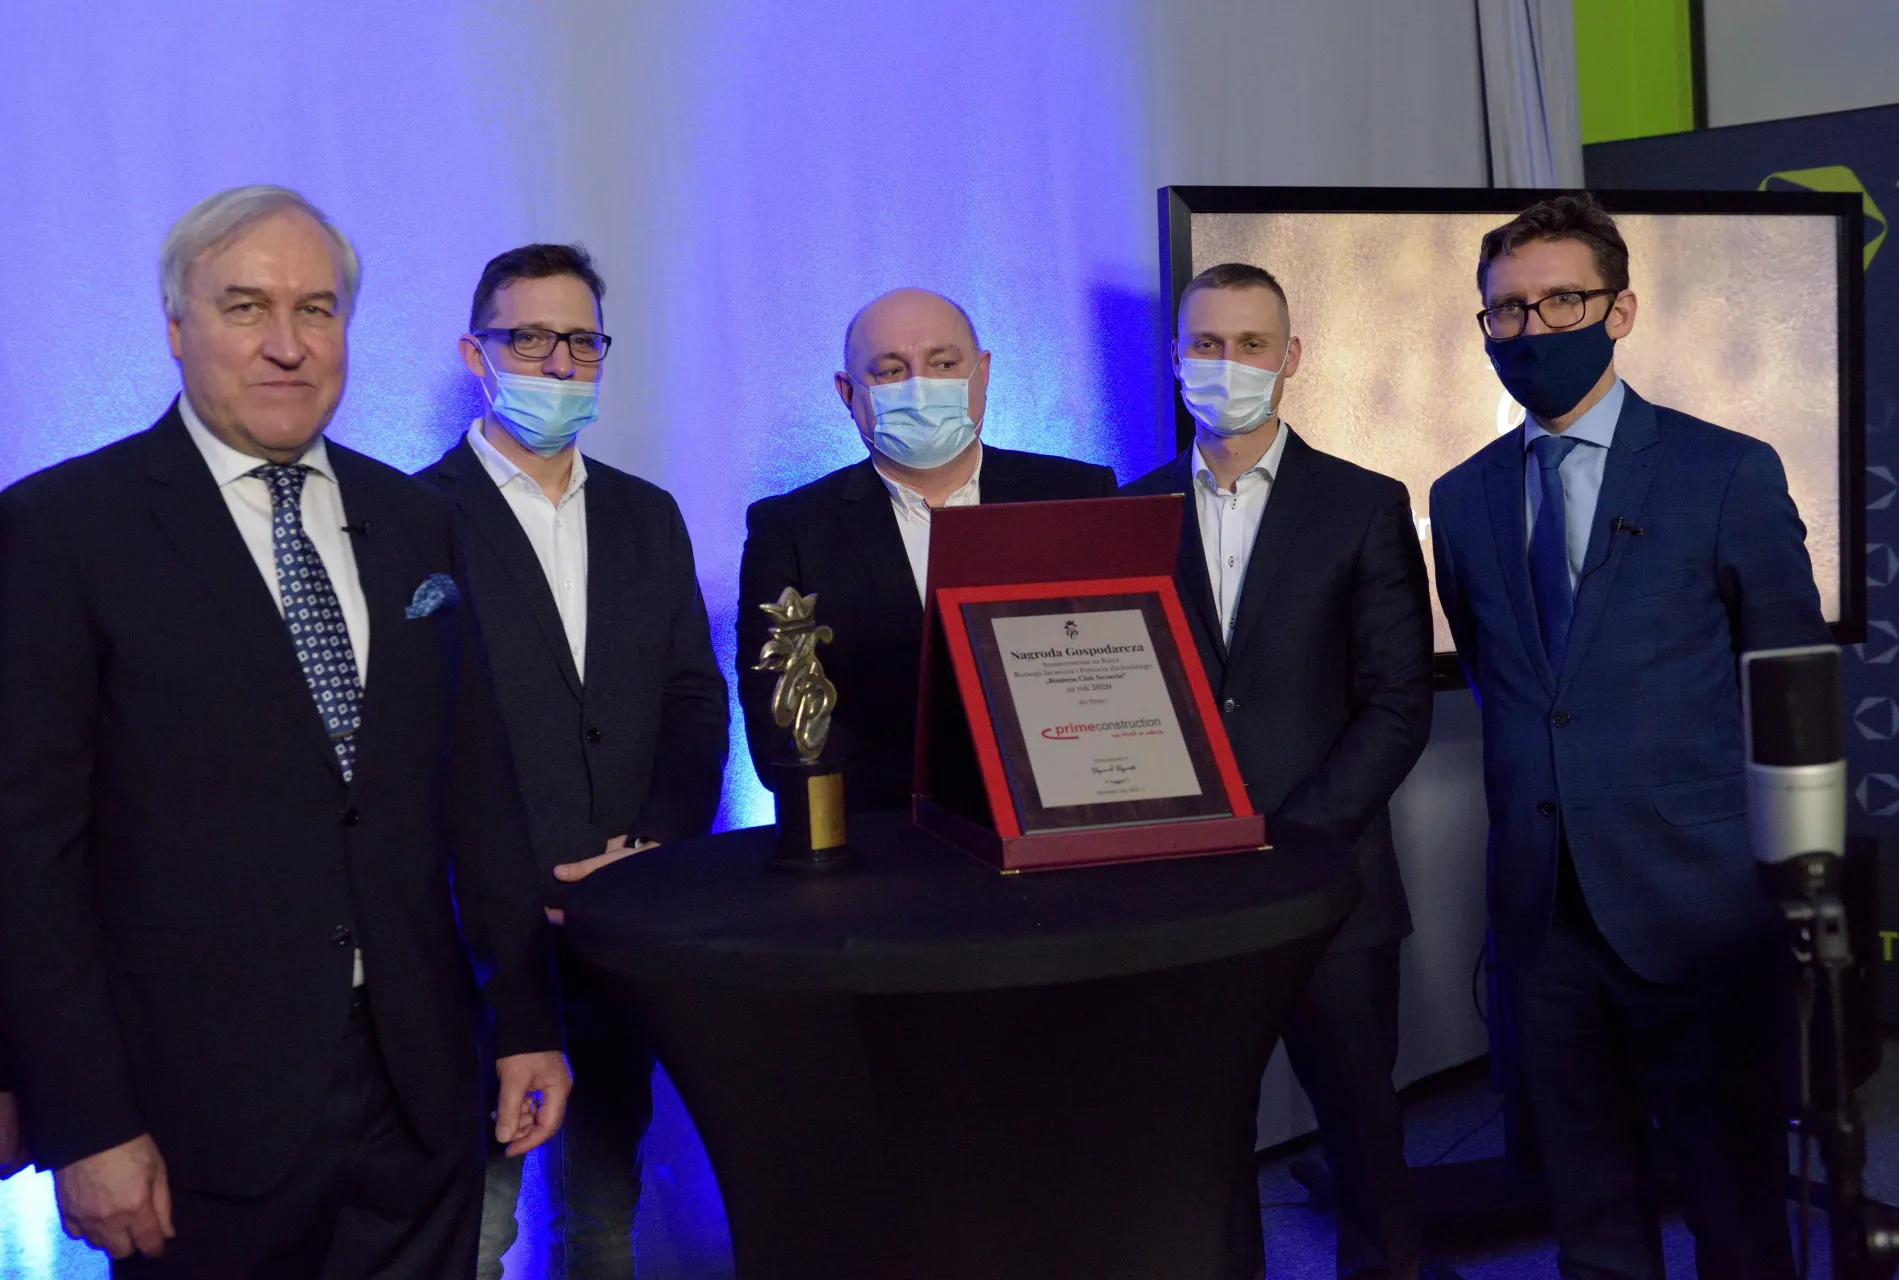 Prime Construction ist der Sieger des WIRTSCHAFTSPREISES 2020, der vom Business Club Szczecin verliehen wird.